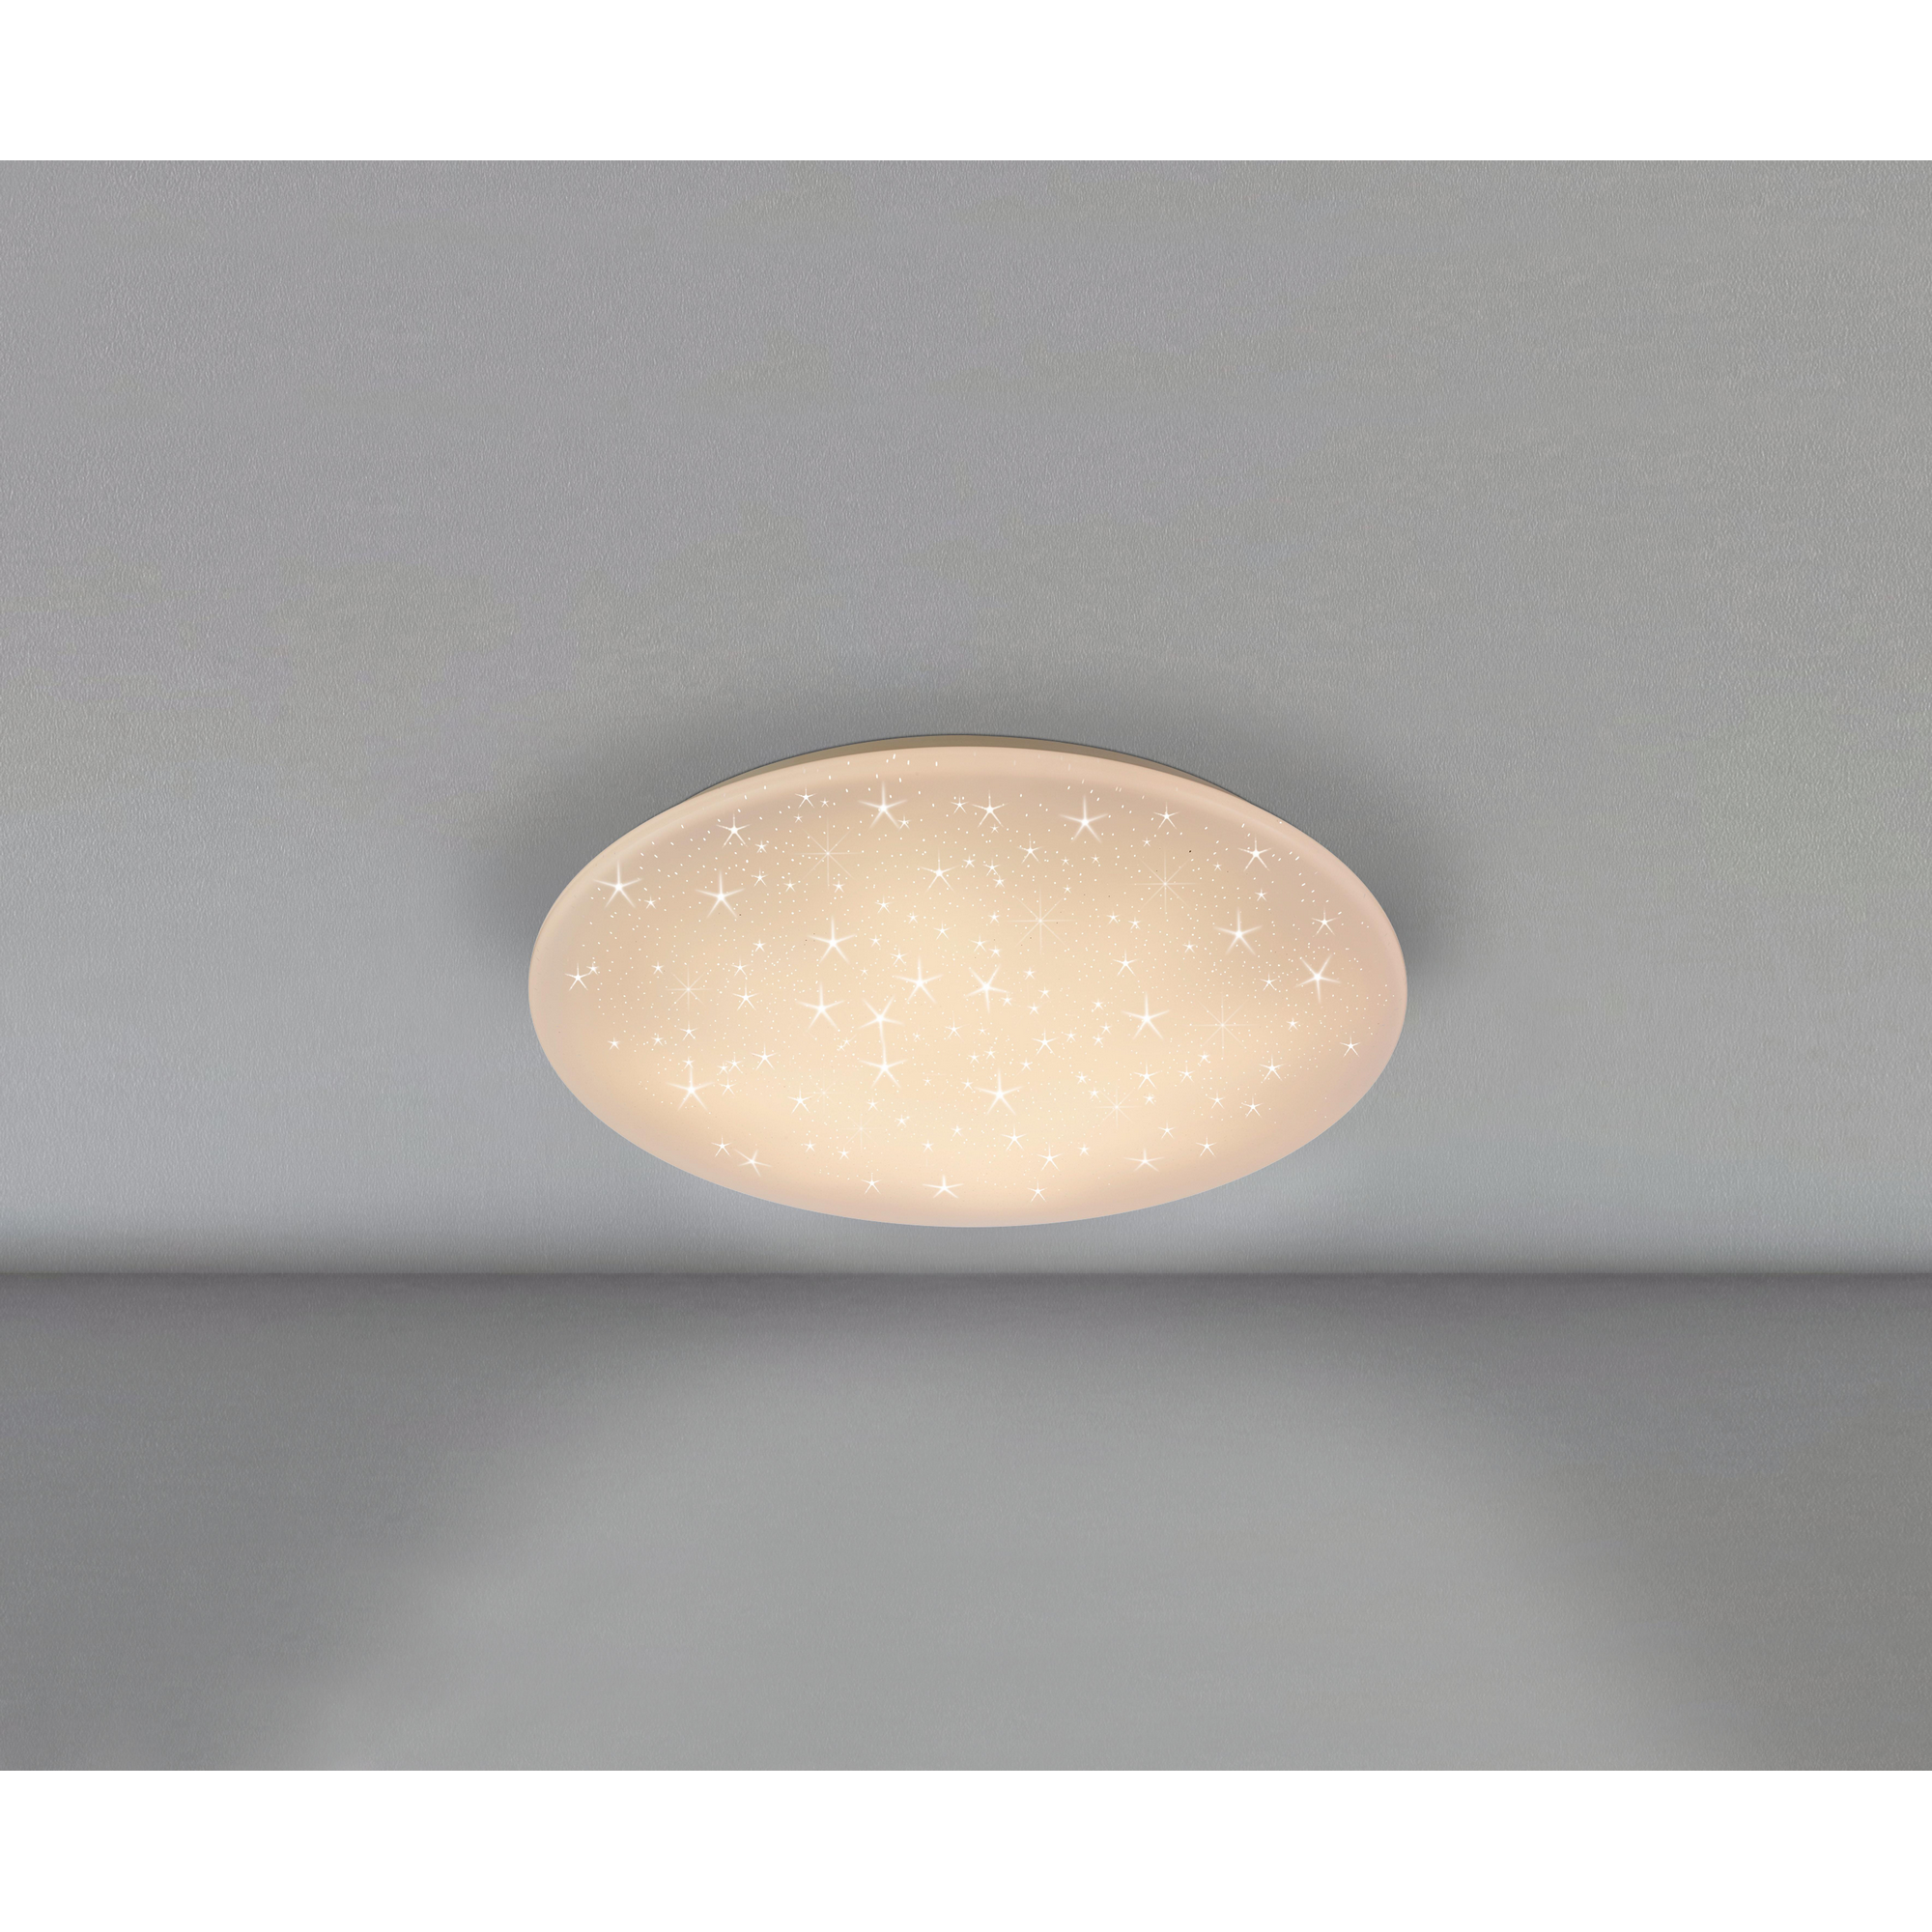 LED-Deckenleuchte 'Lukida' mit Sterneneffekt Ø 38 cm + product picture